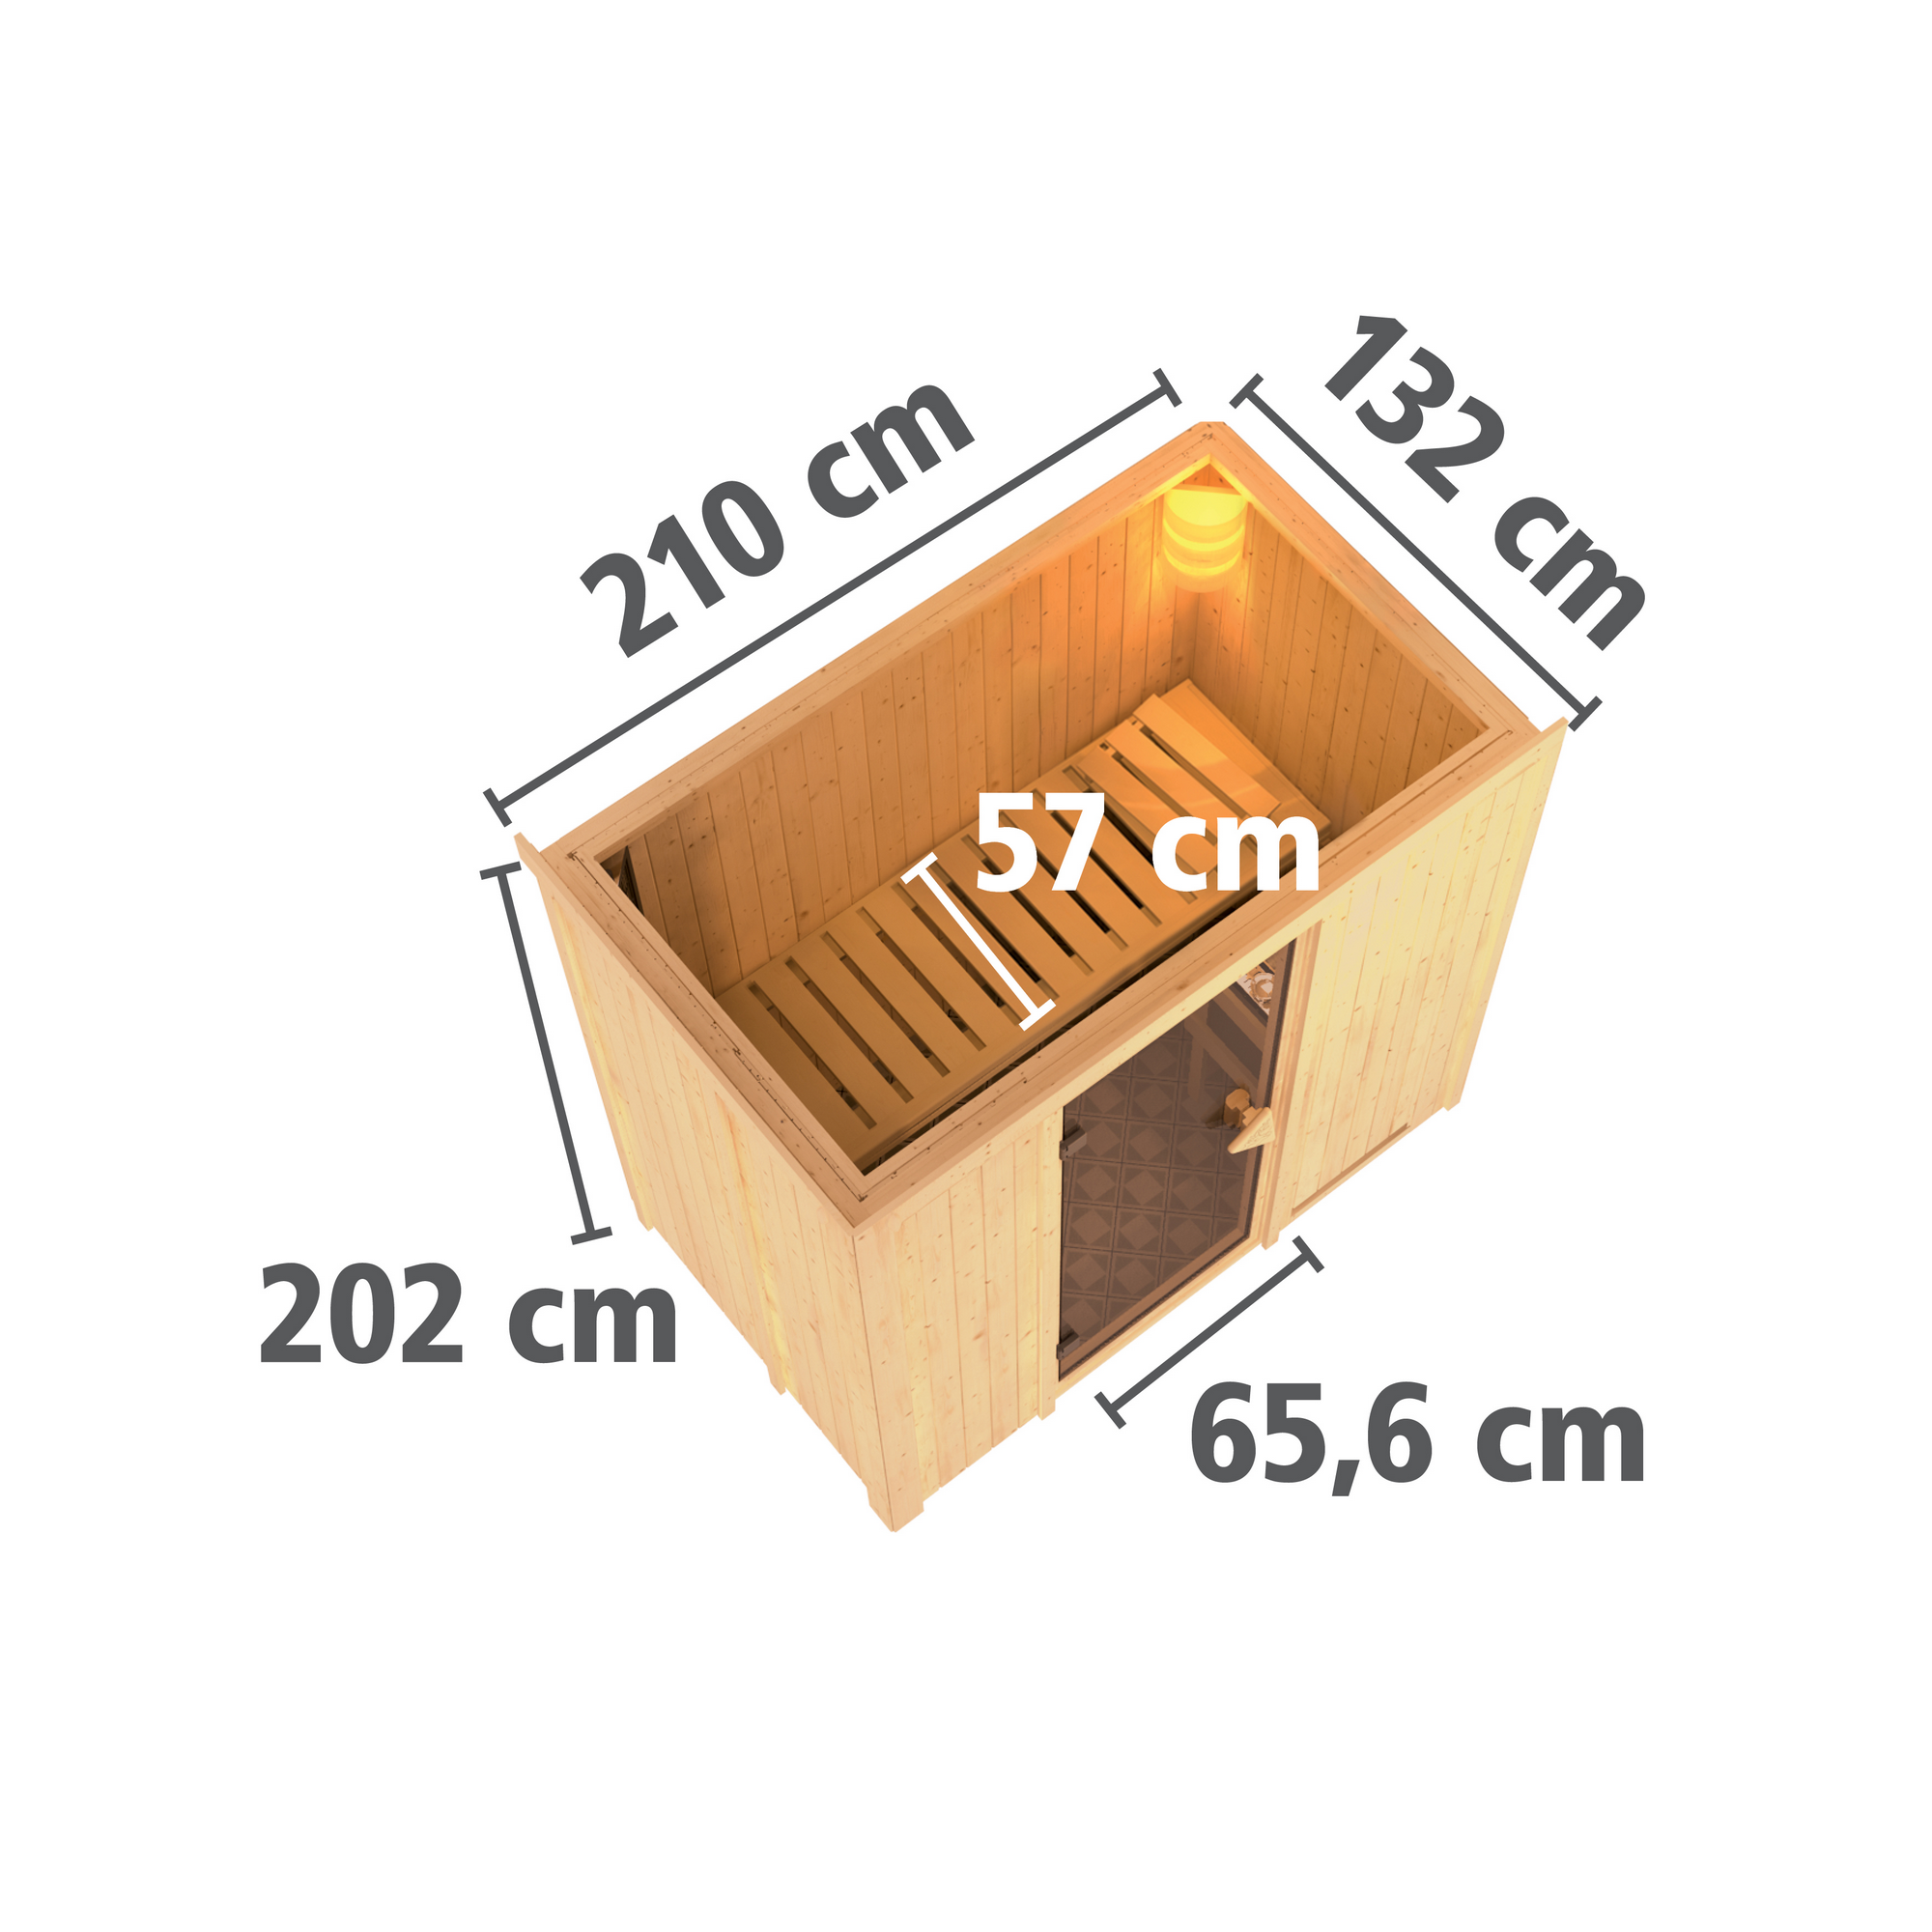 Elementsauna 'Aina' naturbelassen mit Kranz und bronzierter Tür 9 kW Ofen integrierte Steuerung 210 x 132 x 202 cm + product picture